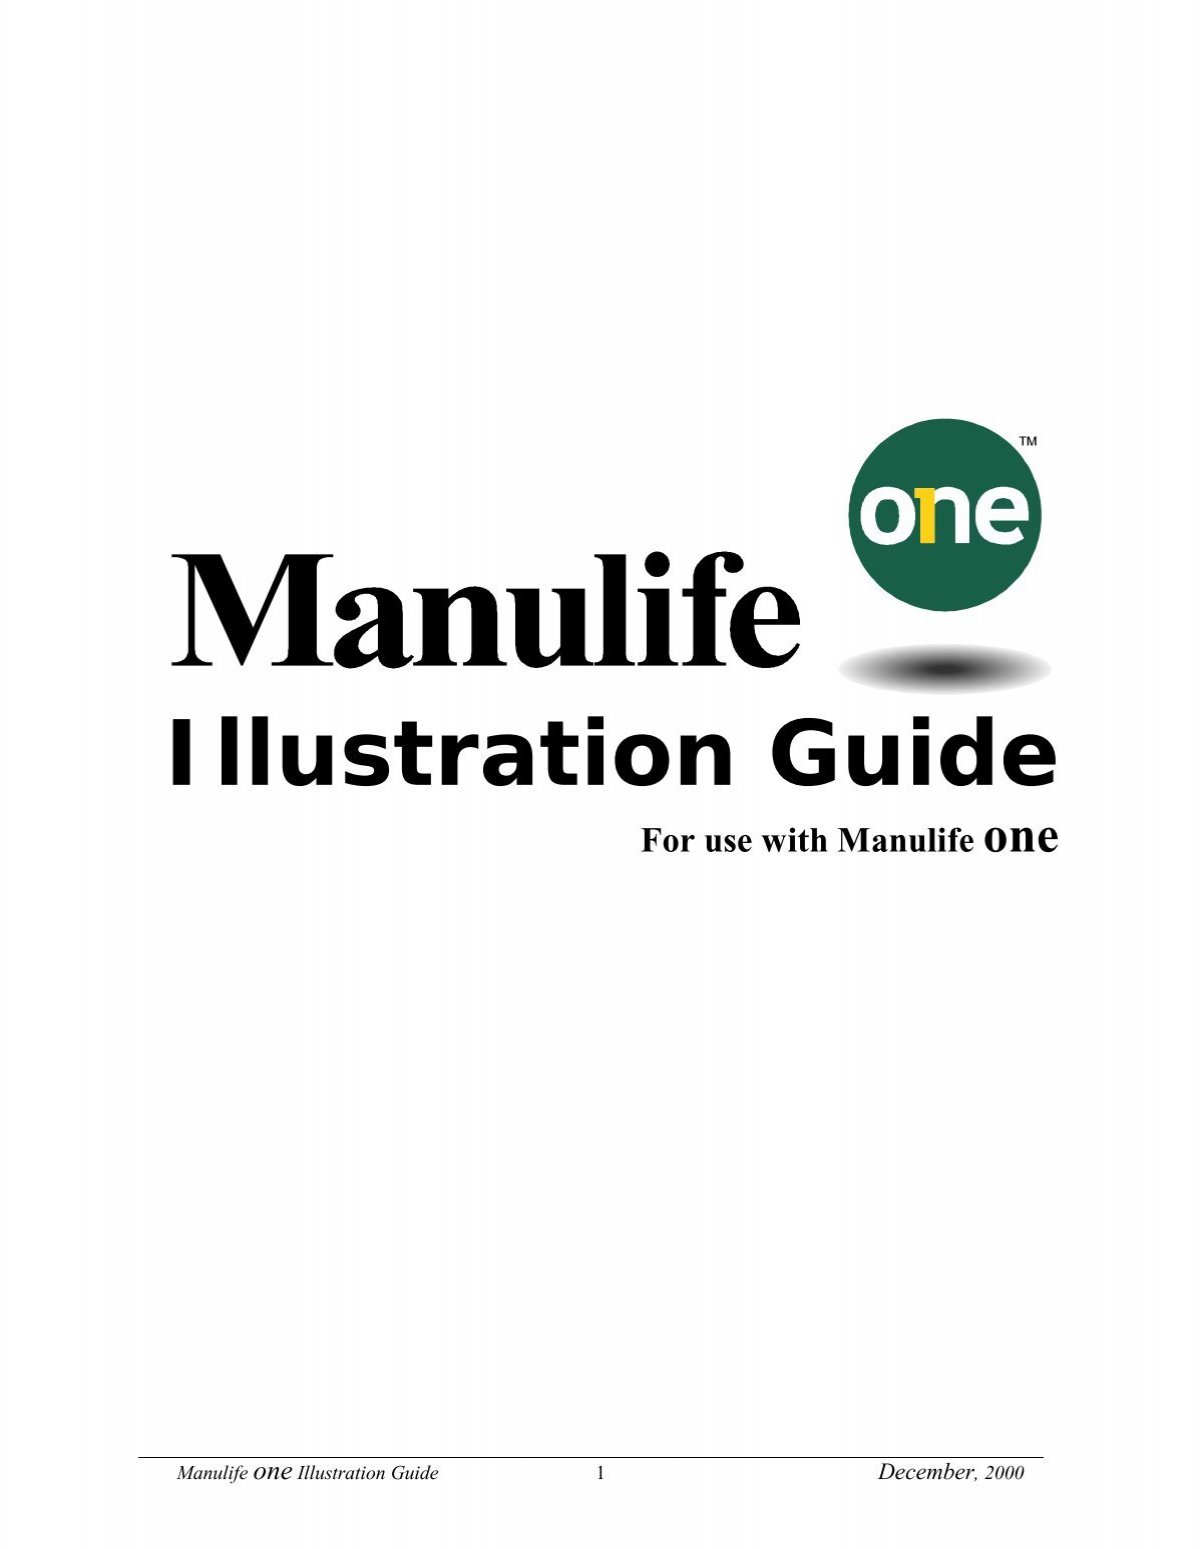 manulife illustration software download